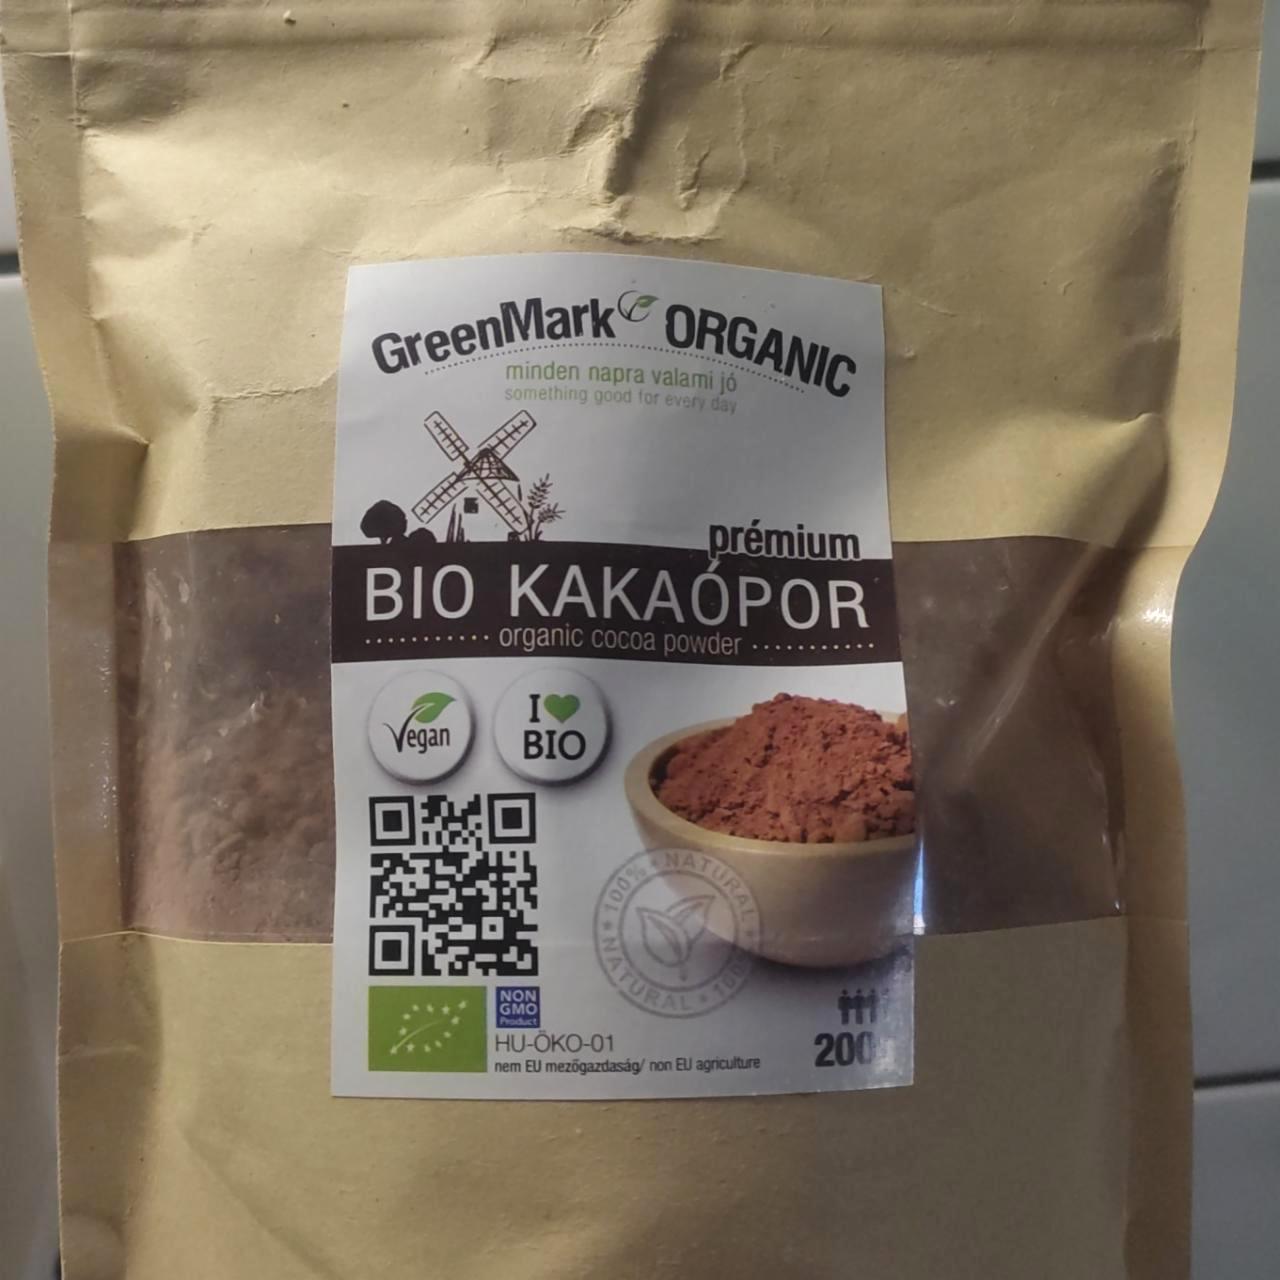 Képek - Bio kakaópor GreenMark Organic